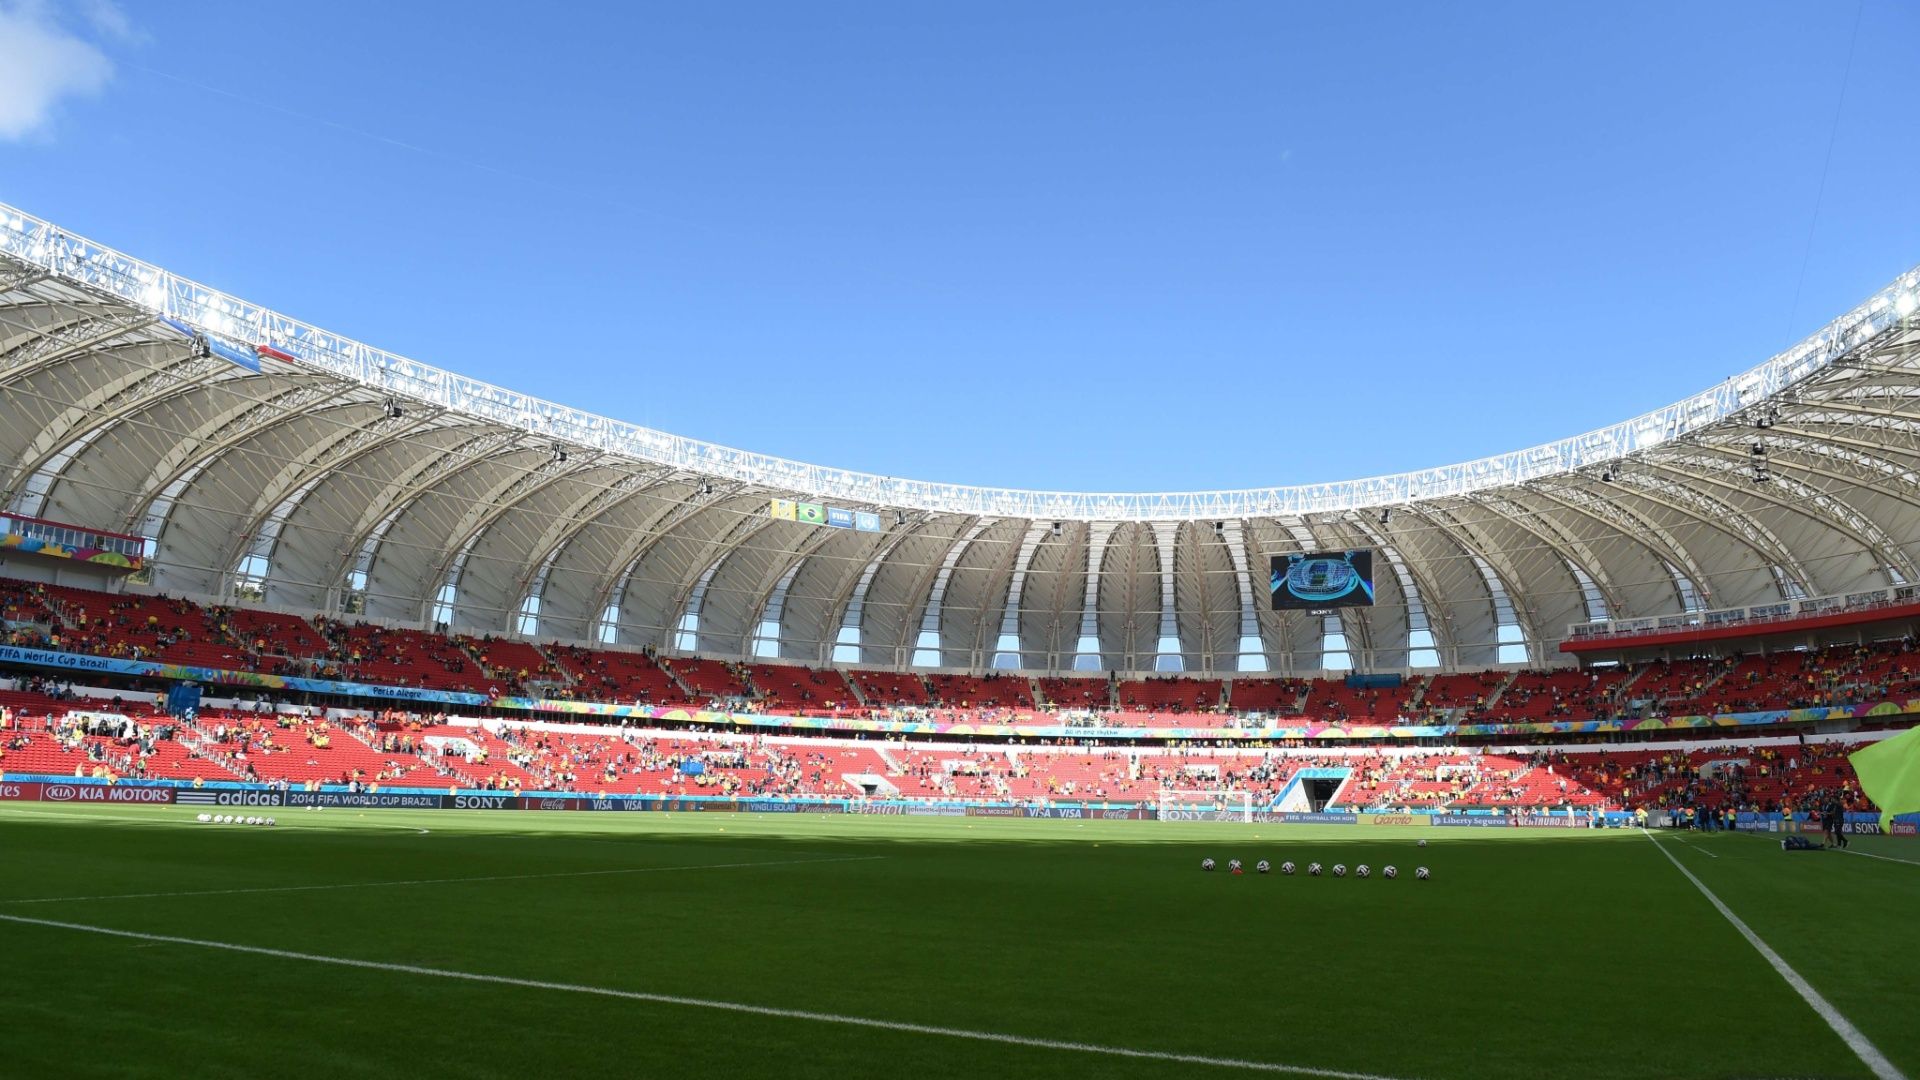 Arquitetos Apontam Beira Rio Entre Os 10 Estádios Mais Lindos. Blog Do Bola